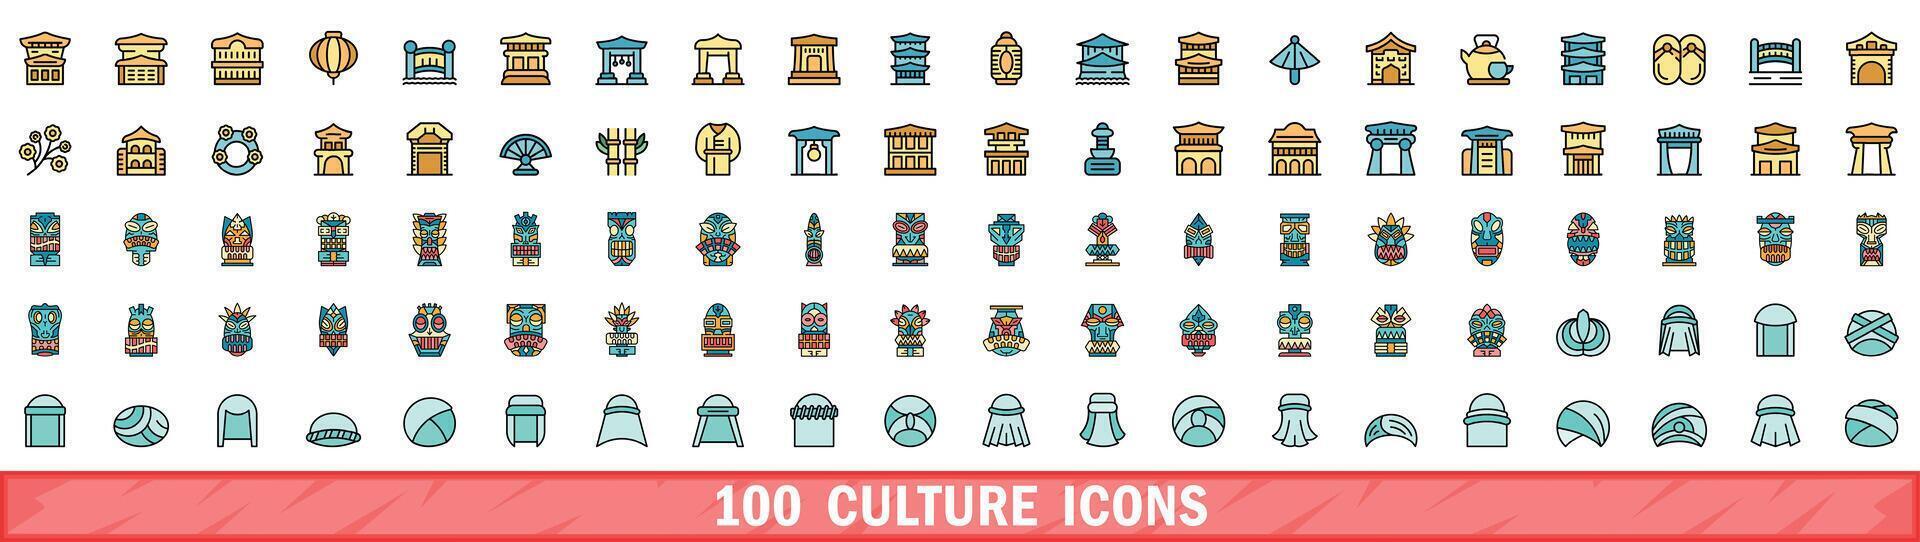 100 cultuur pictogrammen set, kleur lijn stijl vector